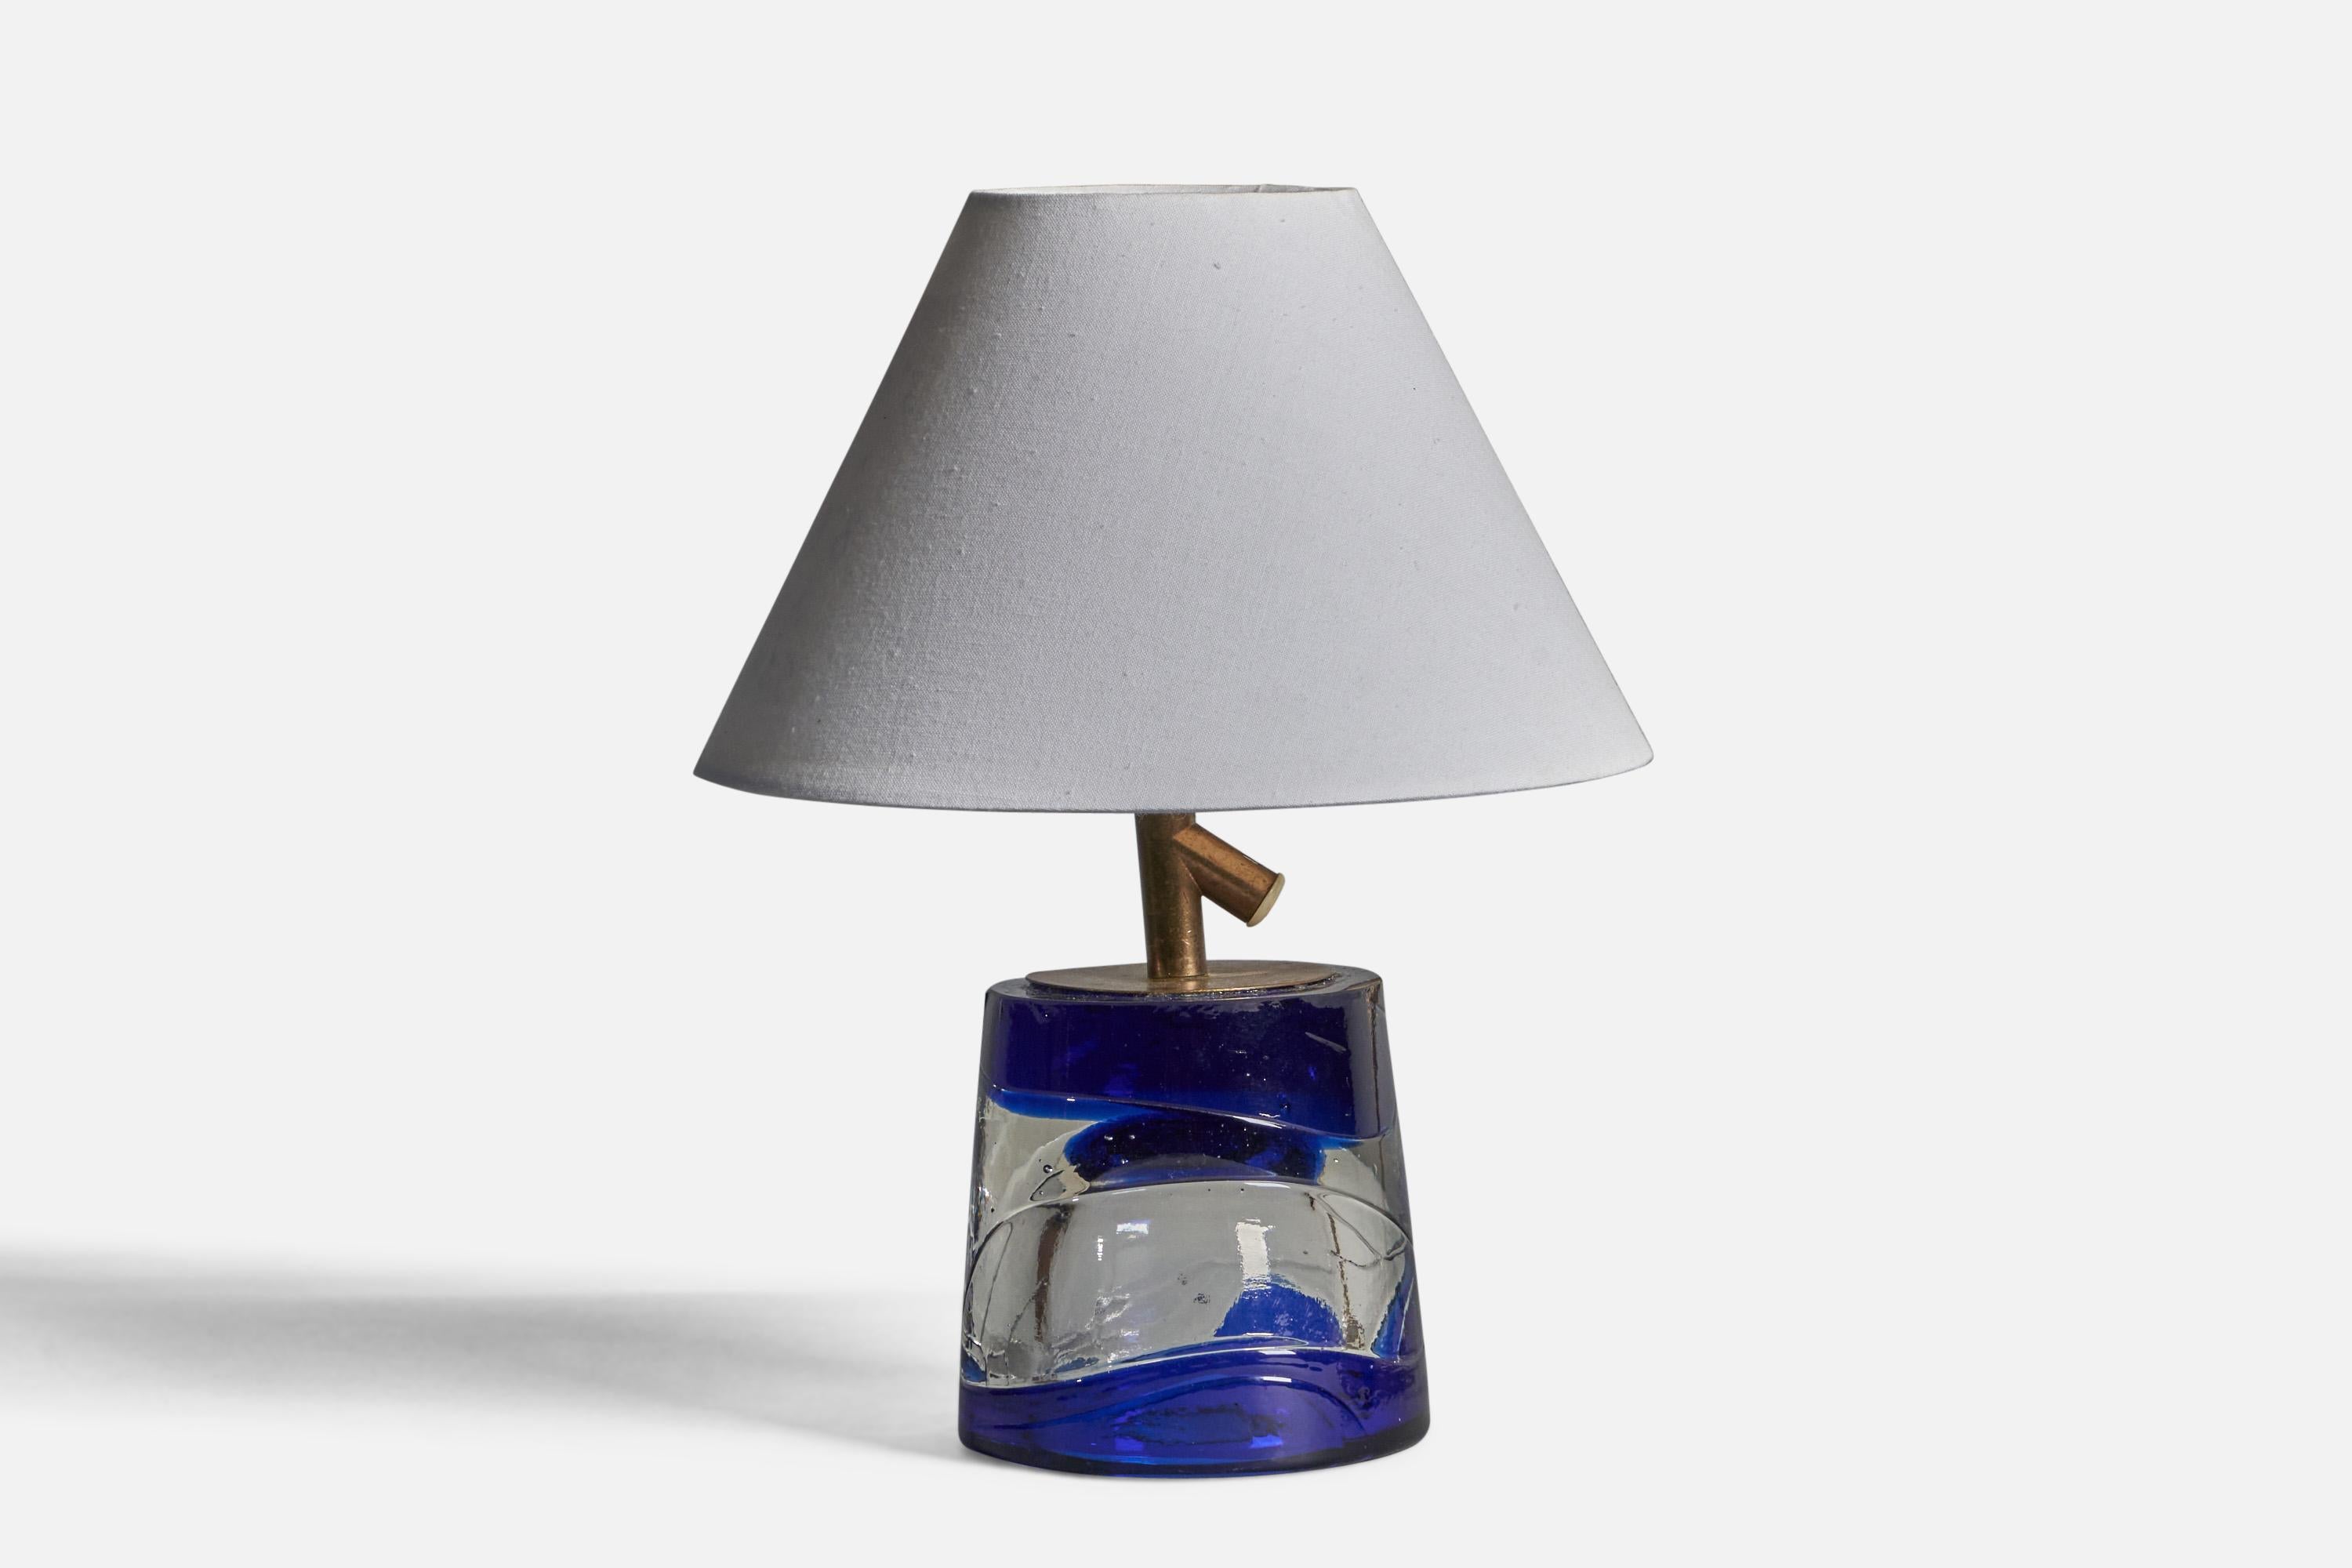 Tischlampe aus blauem und durchscheinendem Glas und Messing, entworfen und hergestellt von Reijmyre, Schweden, 1960er Jahre.

Abmessungen der Lampe (Zoll): 7,5